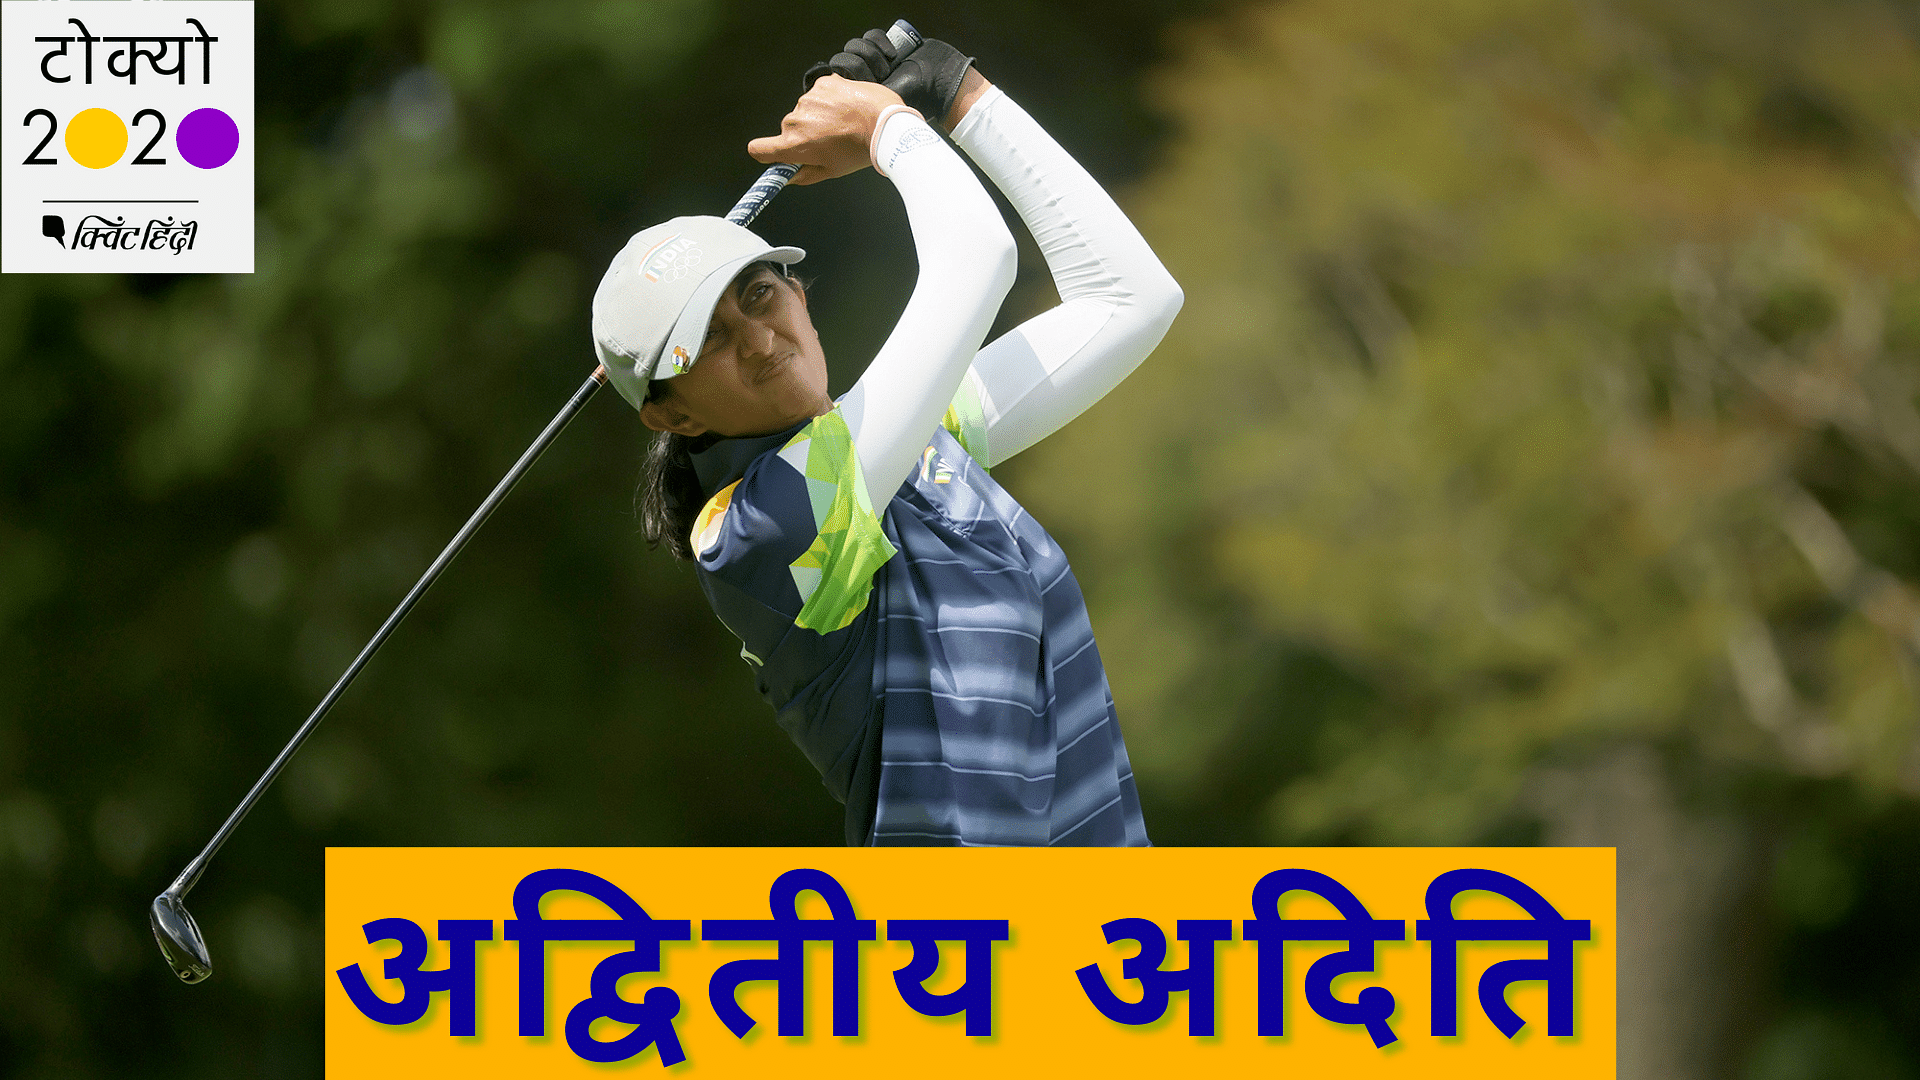 <div class="paragraphs"><p>भारतीय गोल्फर अदिति टोक्यो ओलंपिक में शानदार प्रदर्शन कर रही हैं.</p></div>